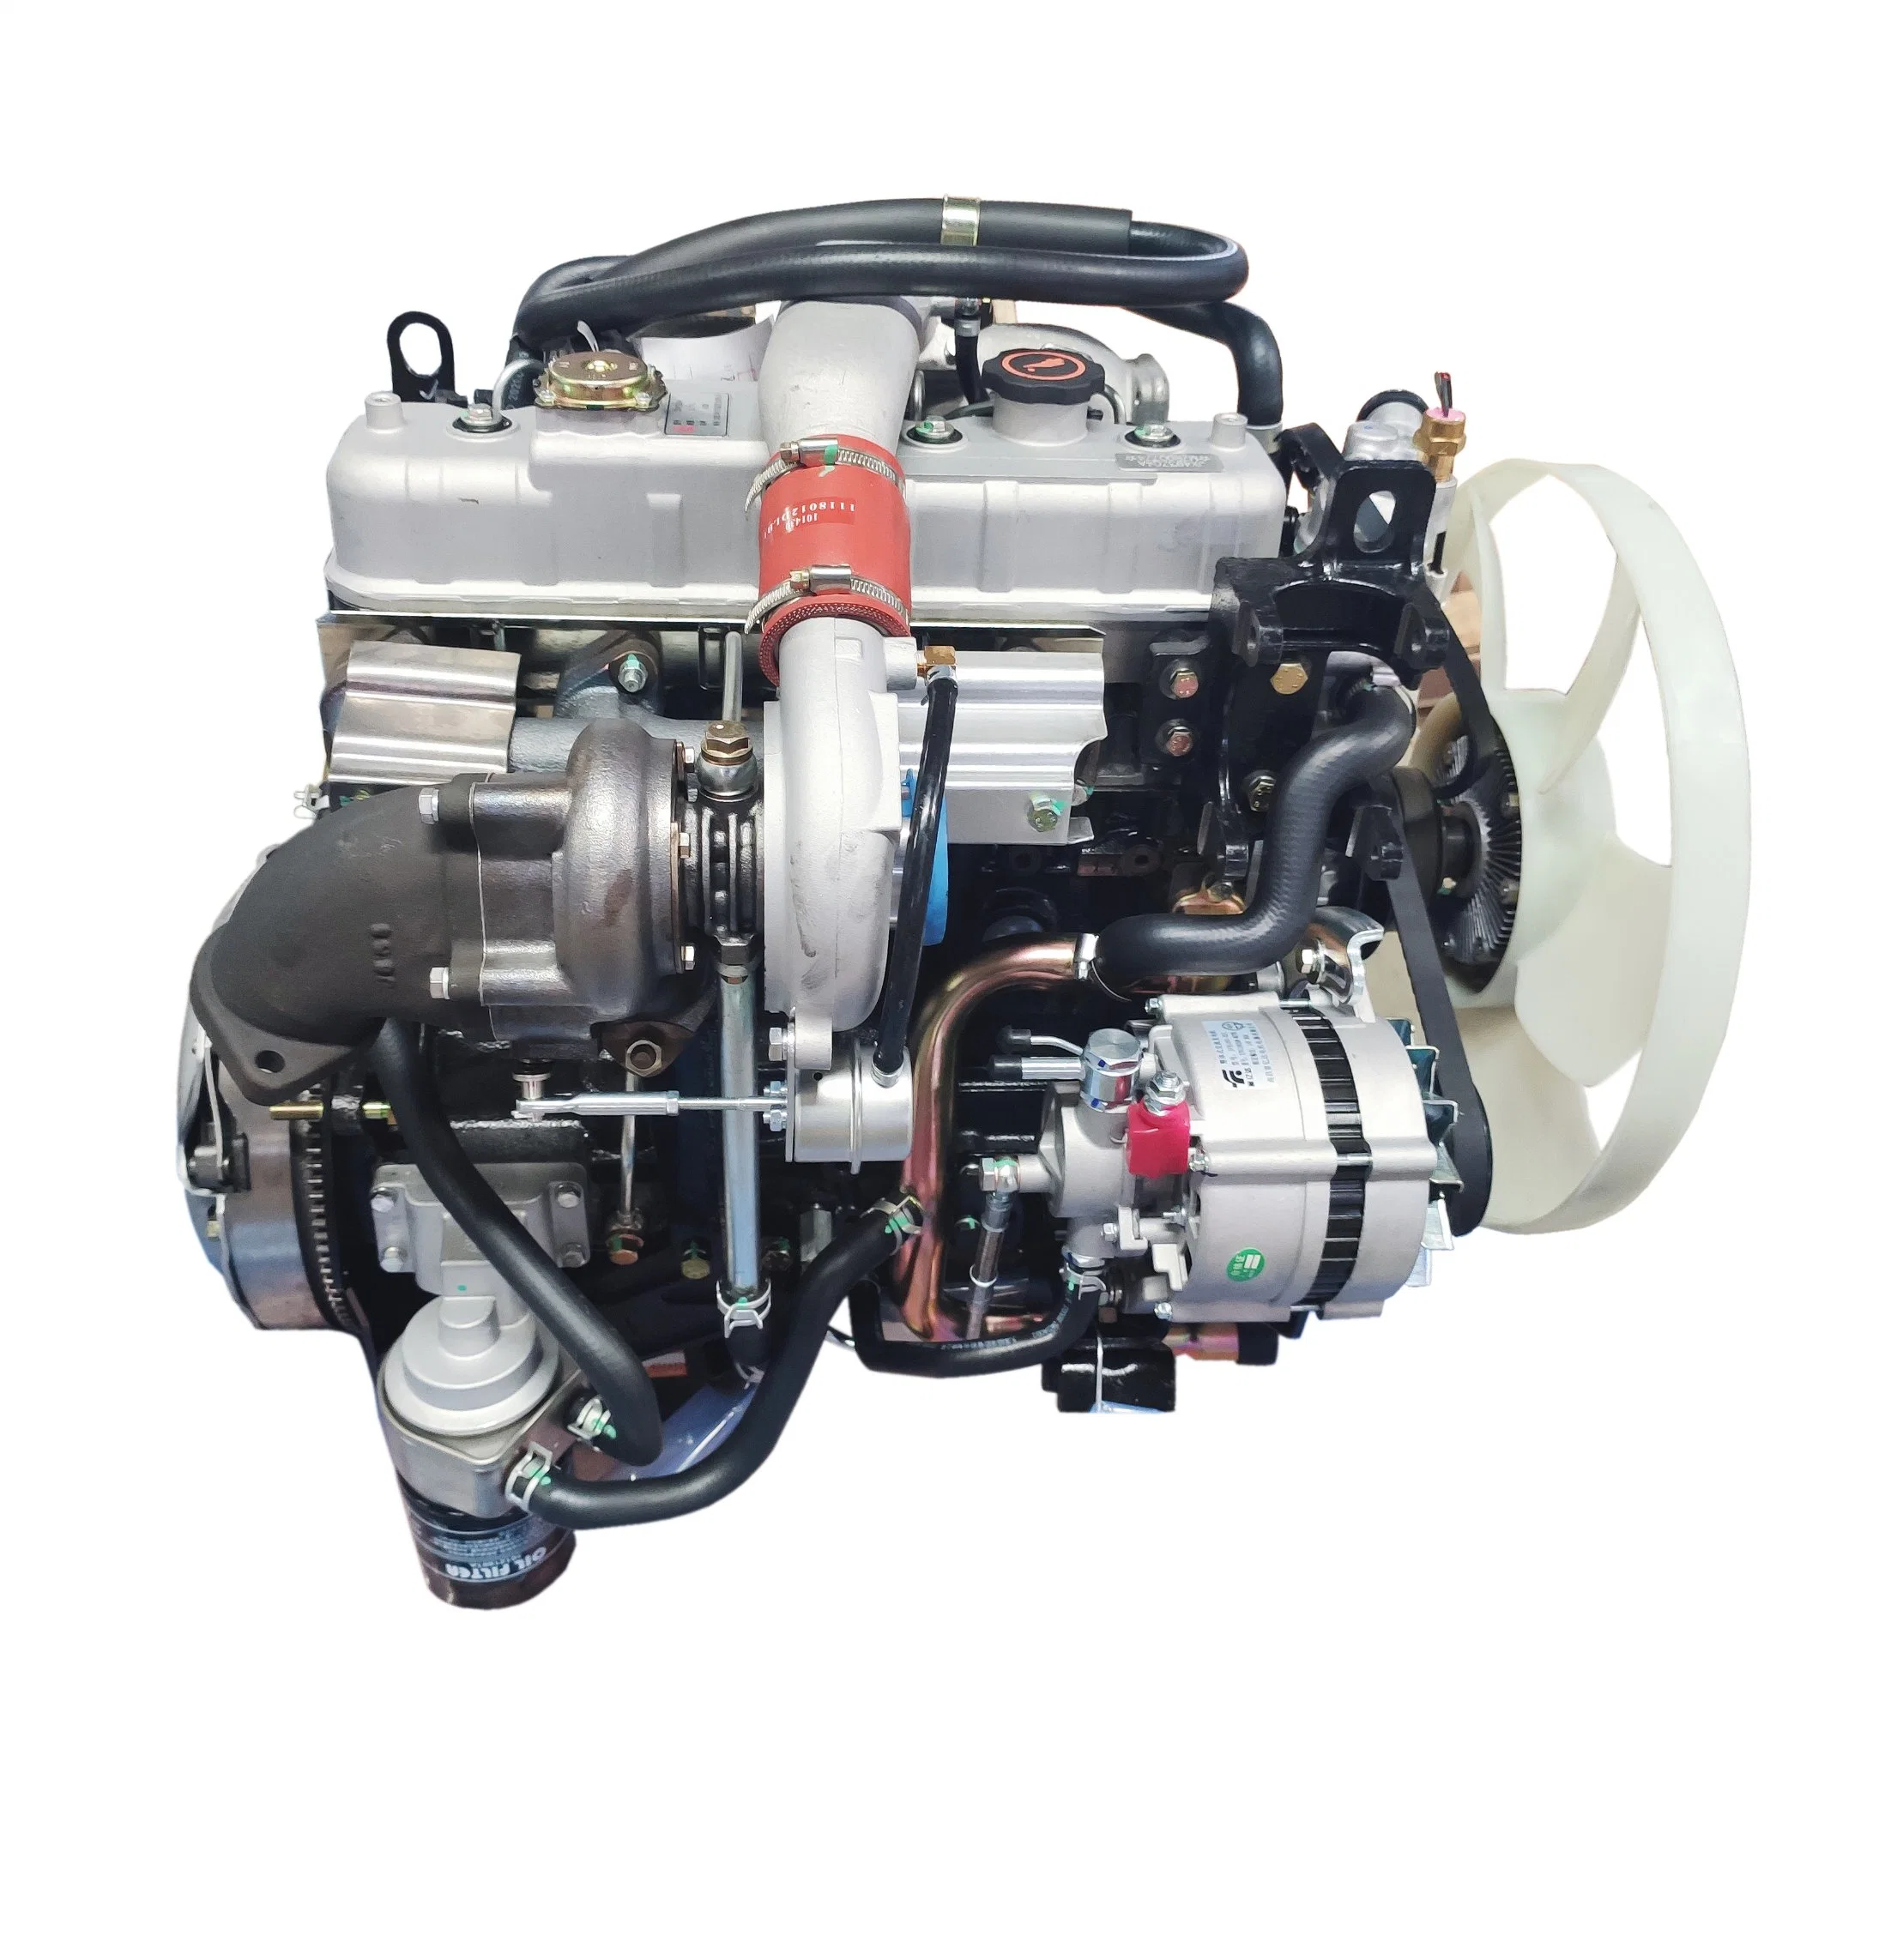 Motor diesel/motor do veículo/motor de refrigeração a água do cilindro4 68kw 4JB1 /4JB1T PARA VEÍCULO SUV Mairne Motor de Barco a Motor Diesel Engine para navio